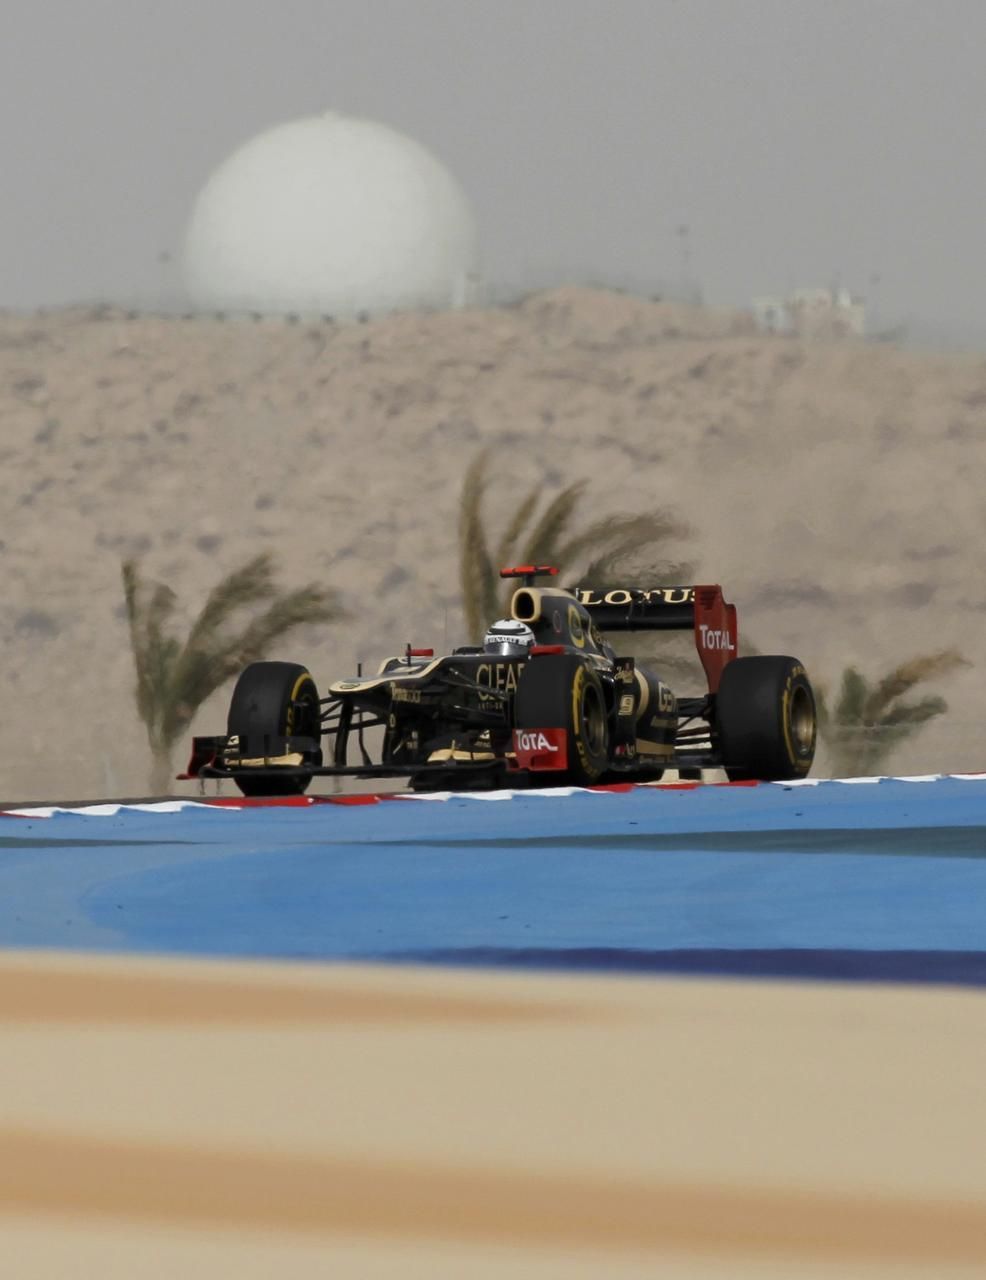 VC Formule 1 v Bahrajnu (Kimi Räikkönen)